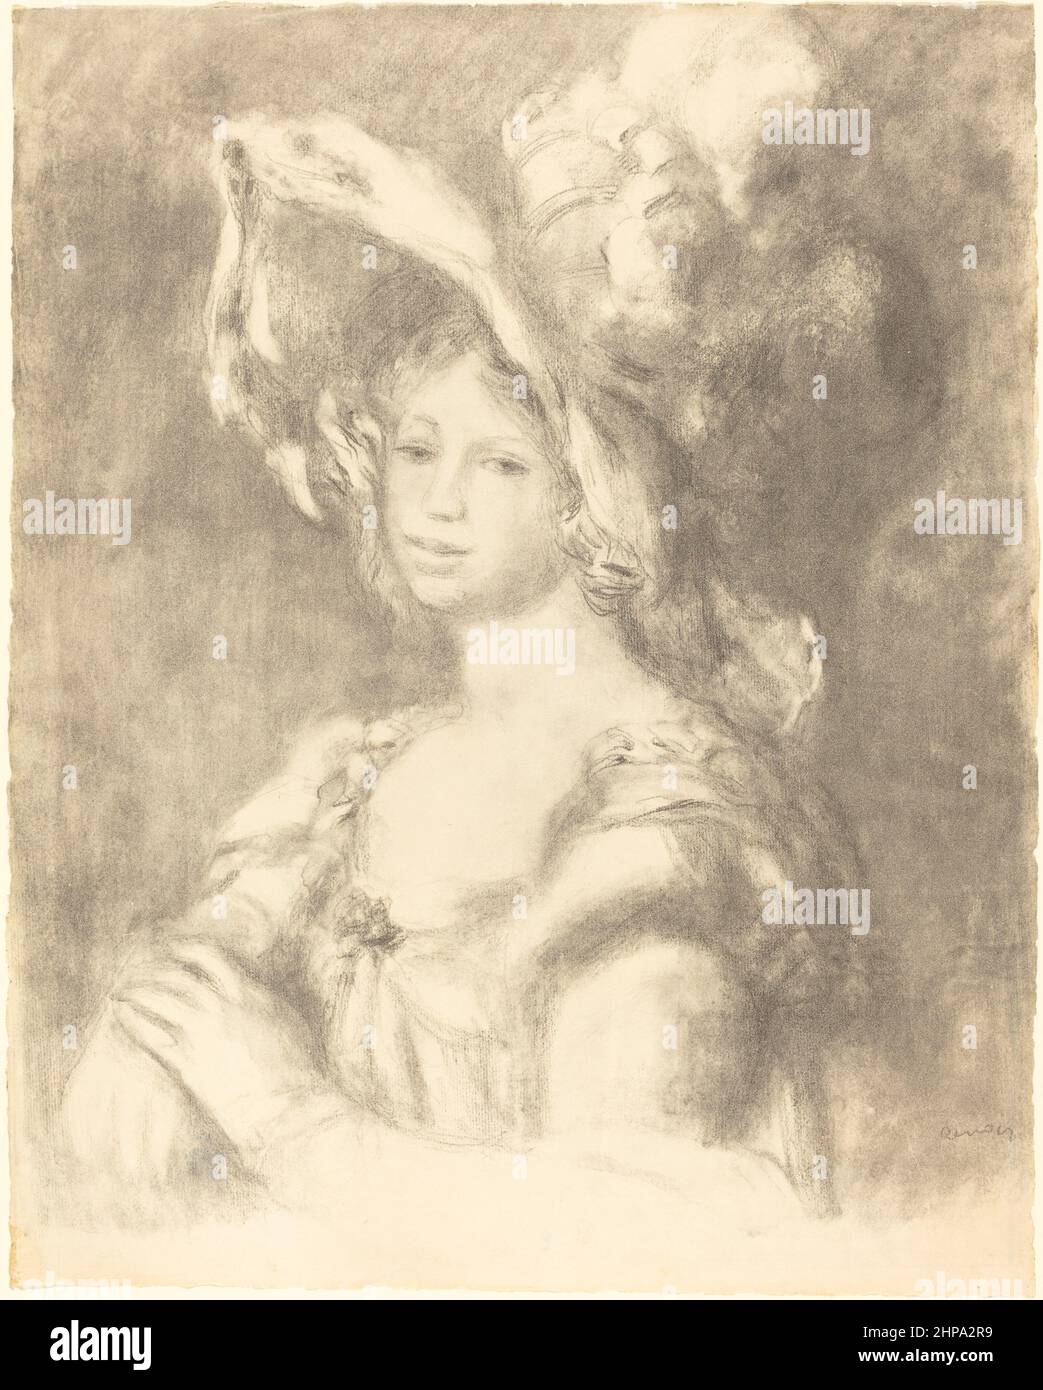 Titolo: Busto di giovane donna (Jeune femme en buste) Creatore: Pierre Auguste Renoir Data: 1892 dimensioni: - Medio: Litografia luogo: Galleria Nazionale d'Arte Foto Stock